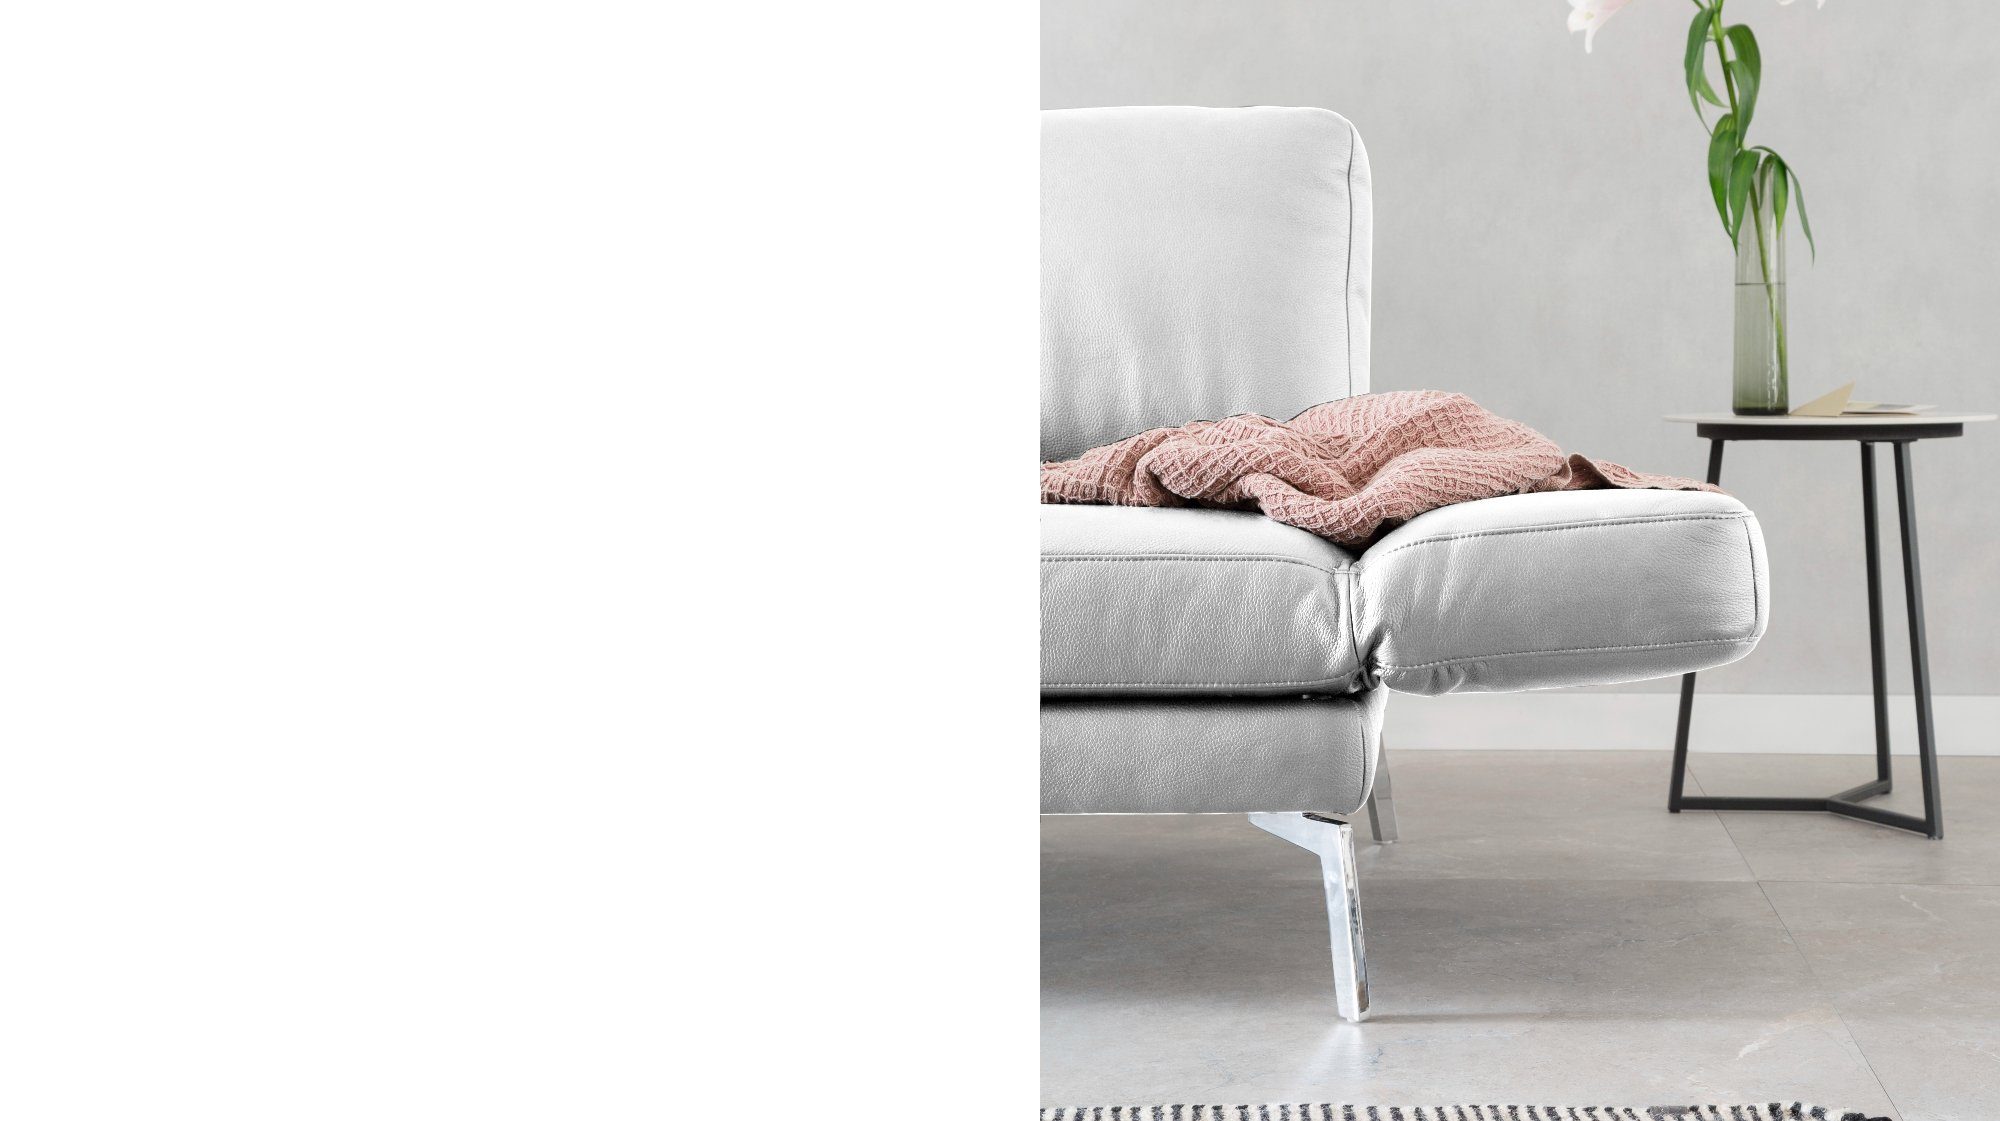 KAWOLA 2-Sitzer HURRICANE, Sofa Leder Farben verschiedene weiß